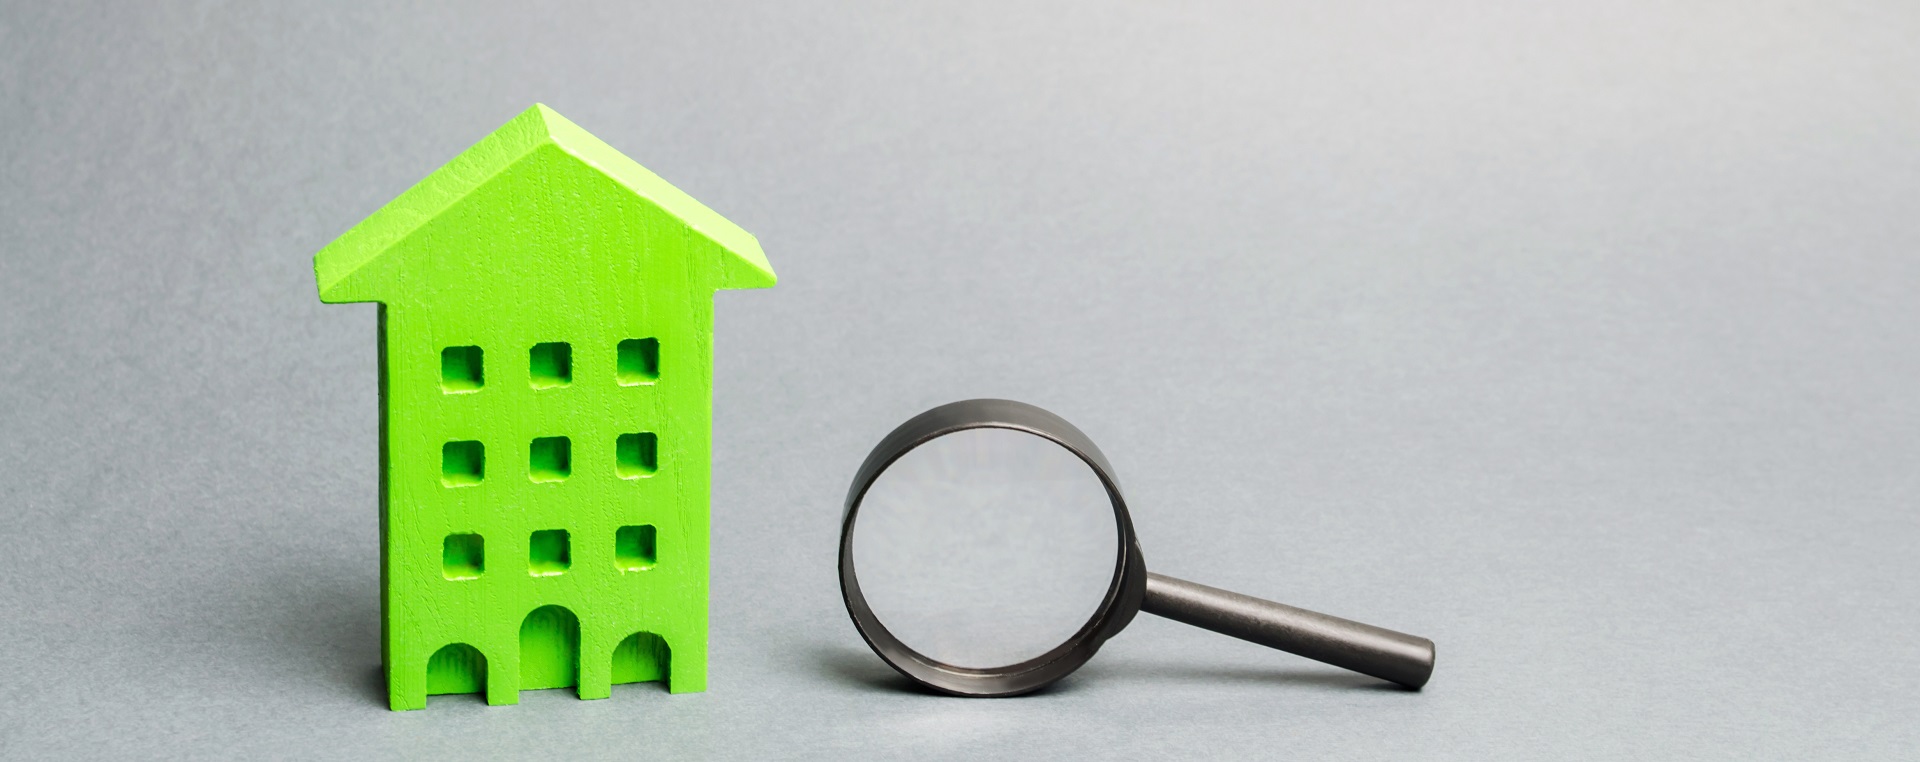 Что может повлиять на стоимость недвижимости?